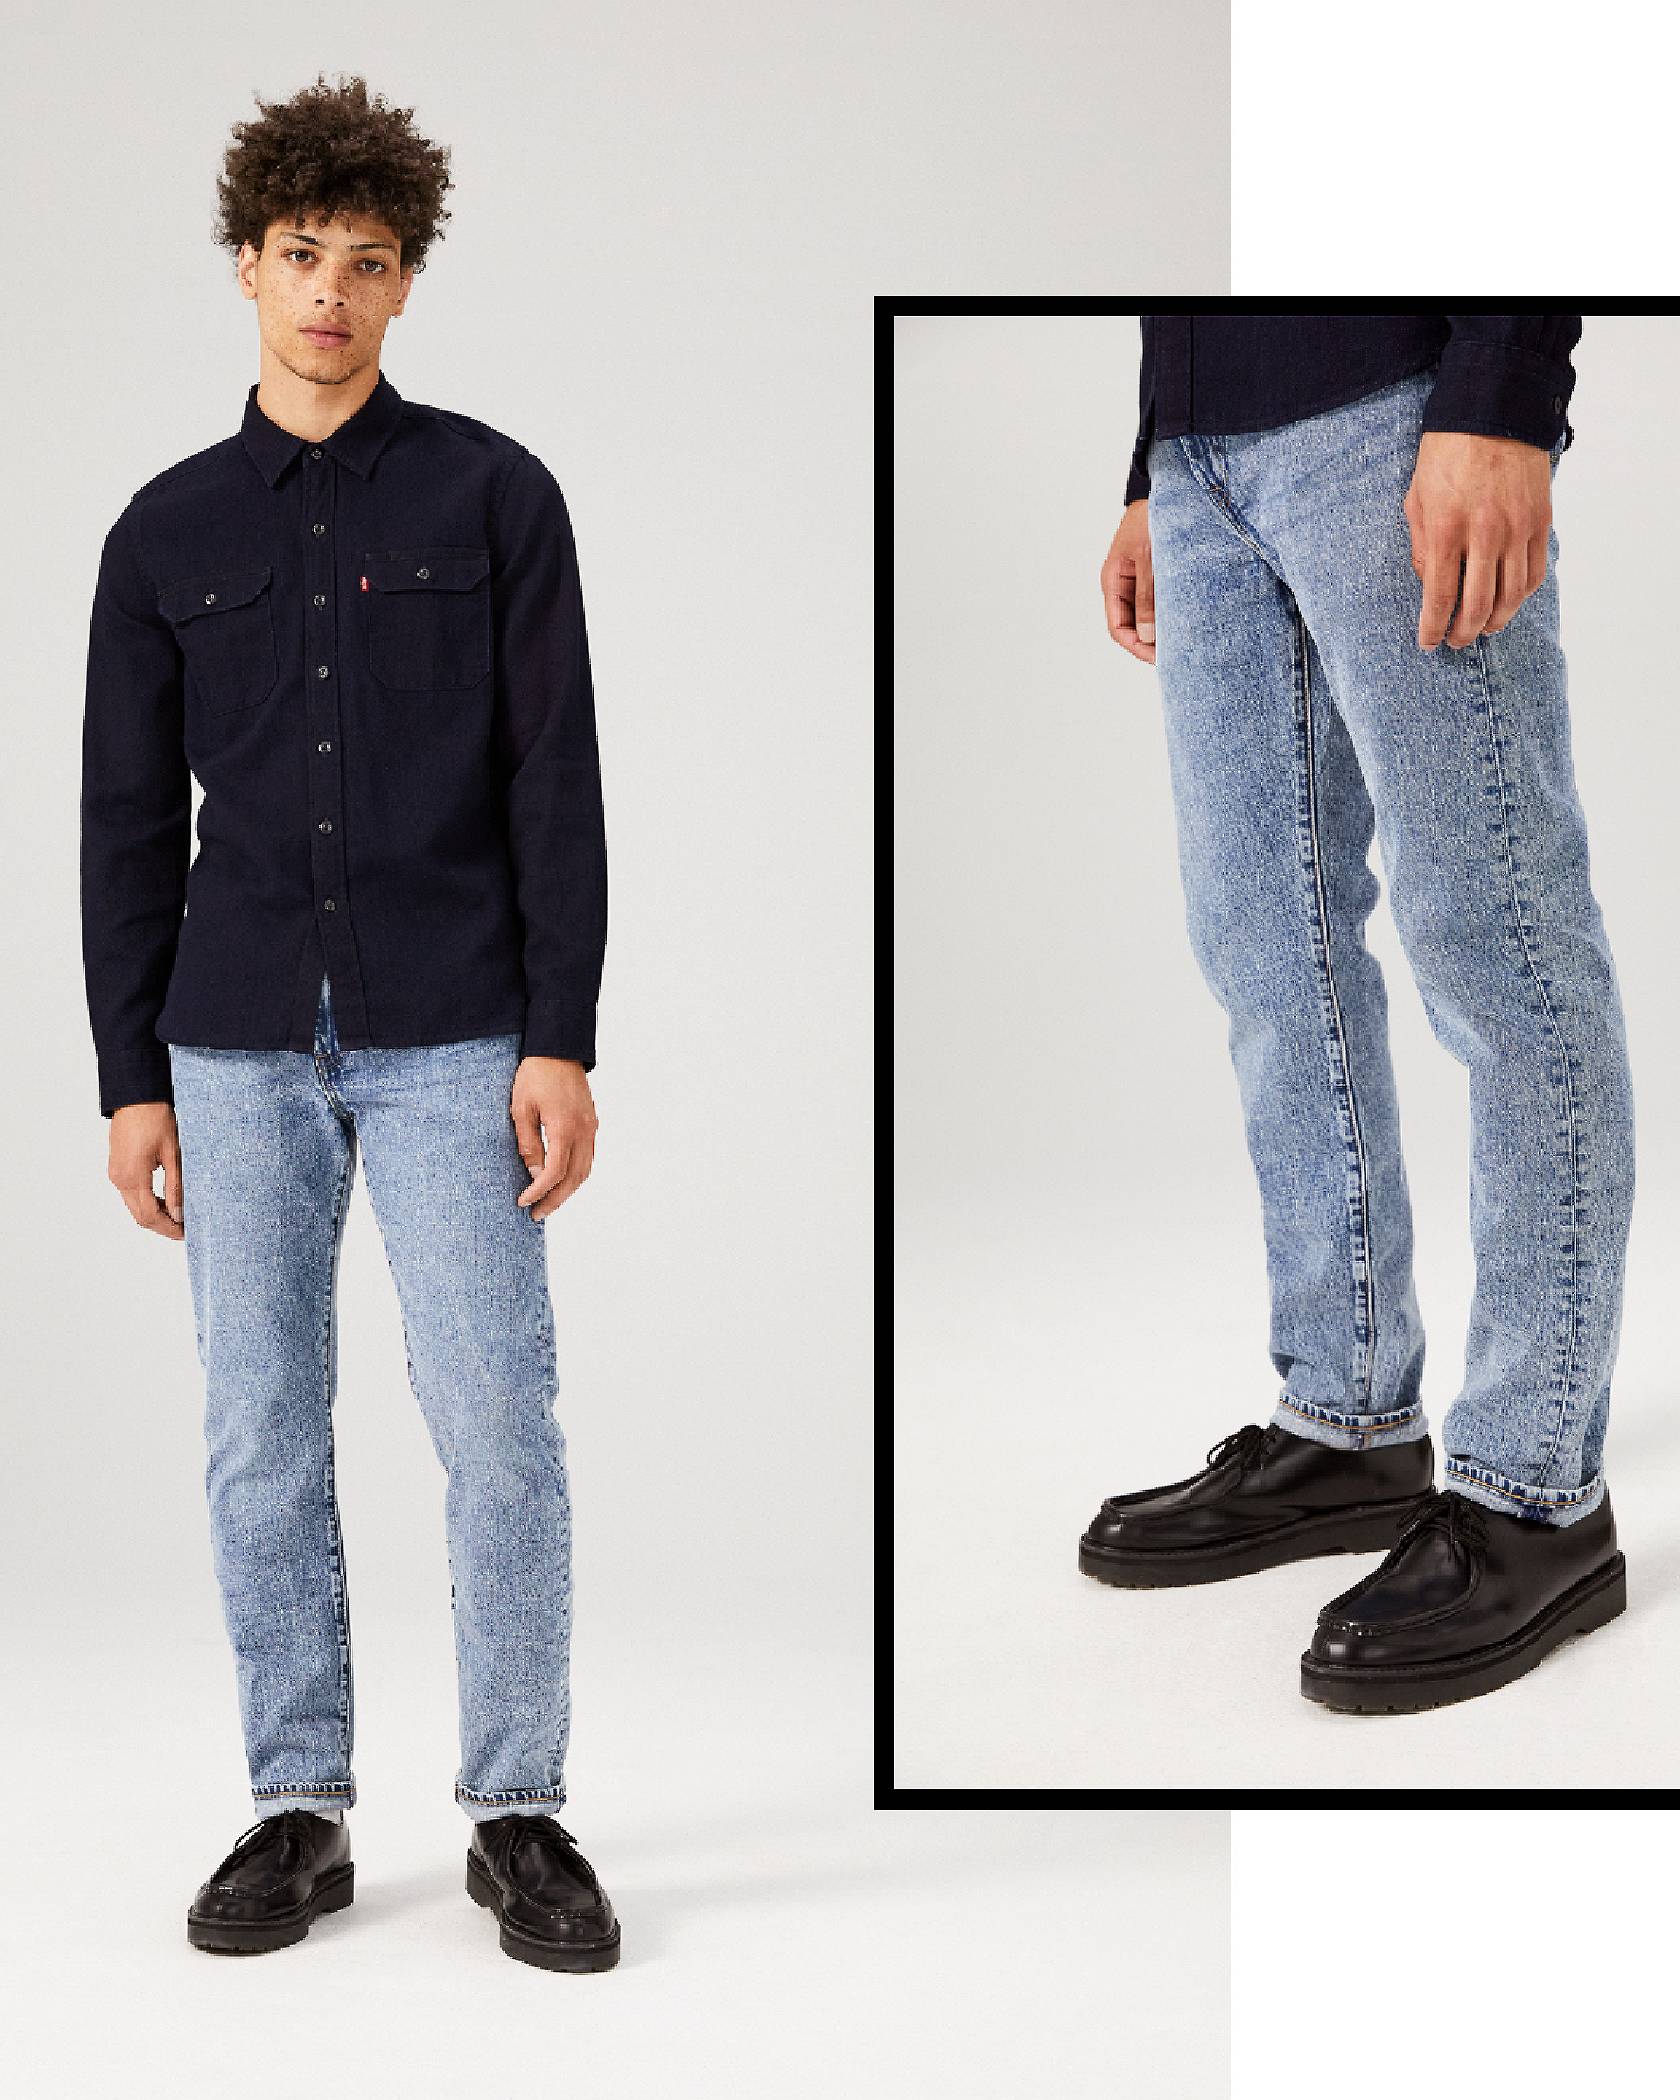 502 Regular Taper Jeans, men modeling them.